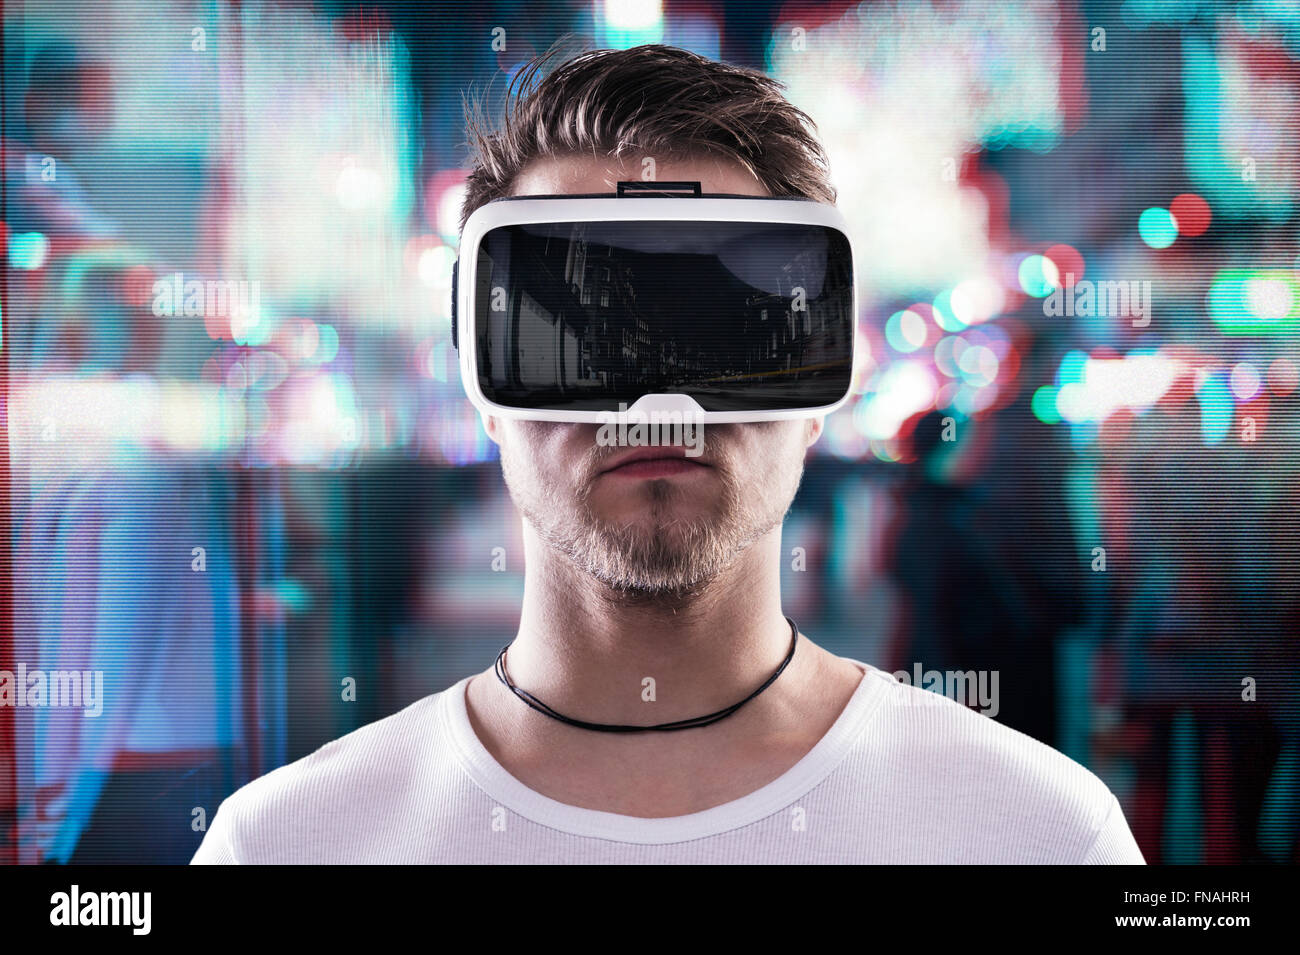 El hombre llevaba gafas de realidad virtual contra la ciudad de noche Foto de stock